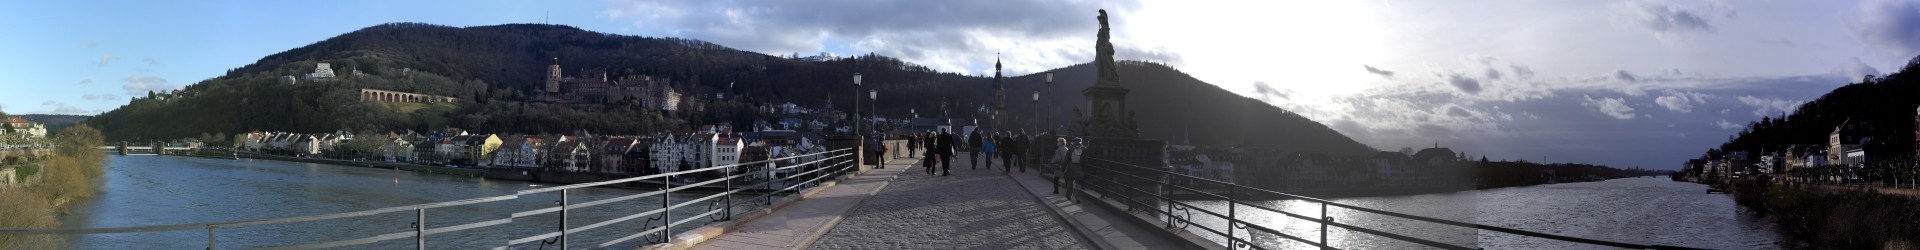 Das große Faß im Heidelberger Schloß